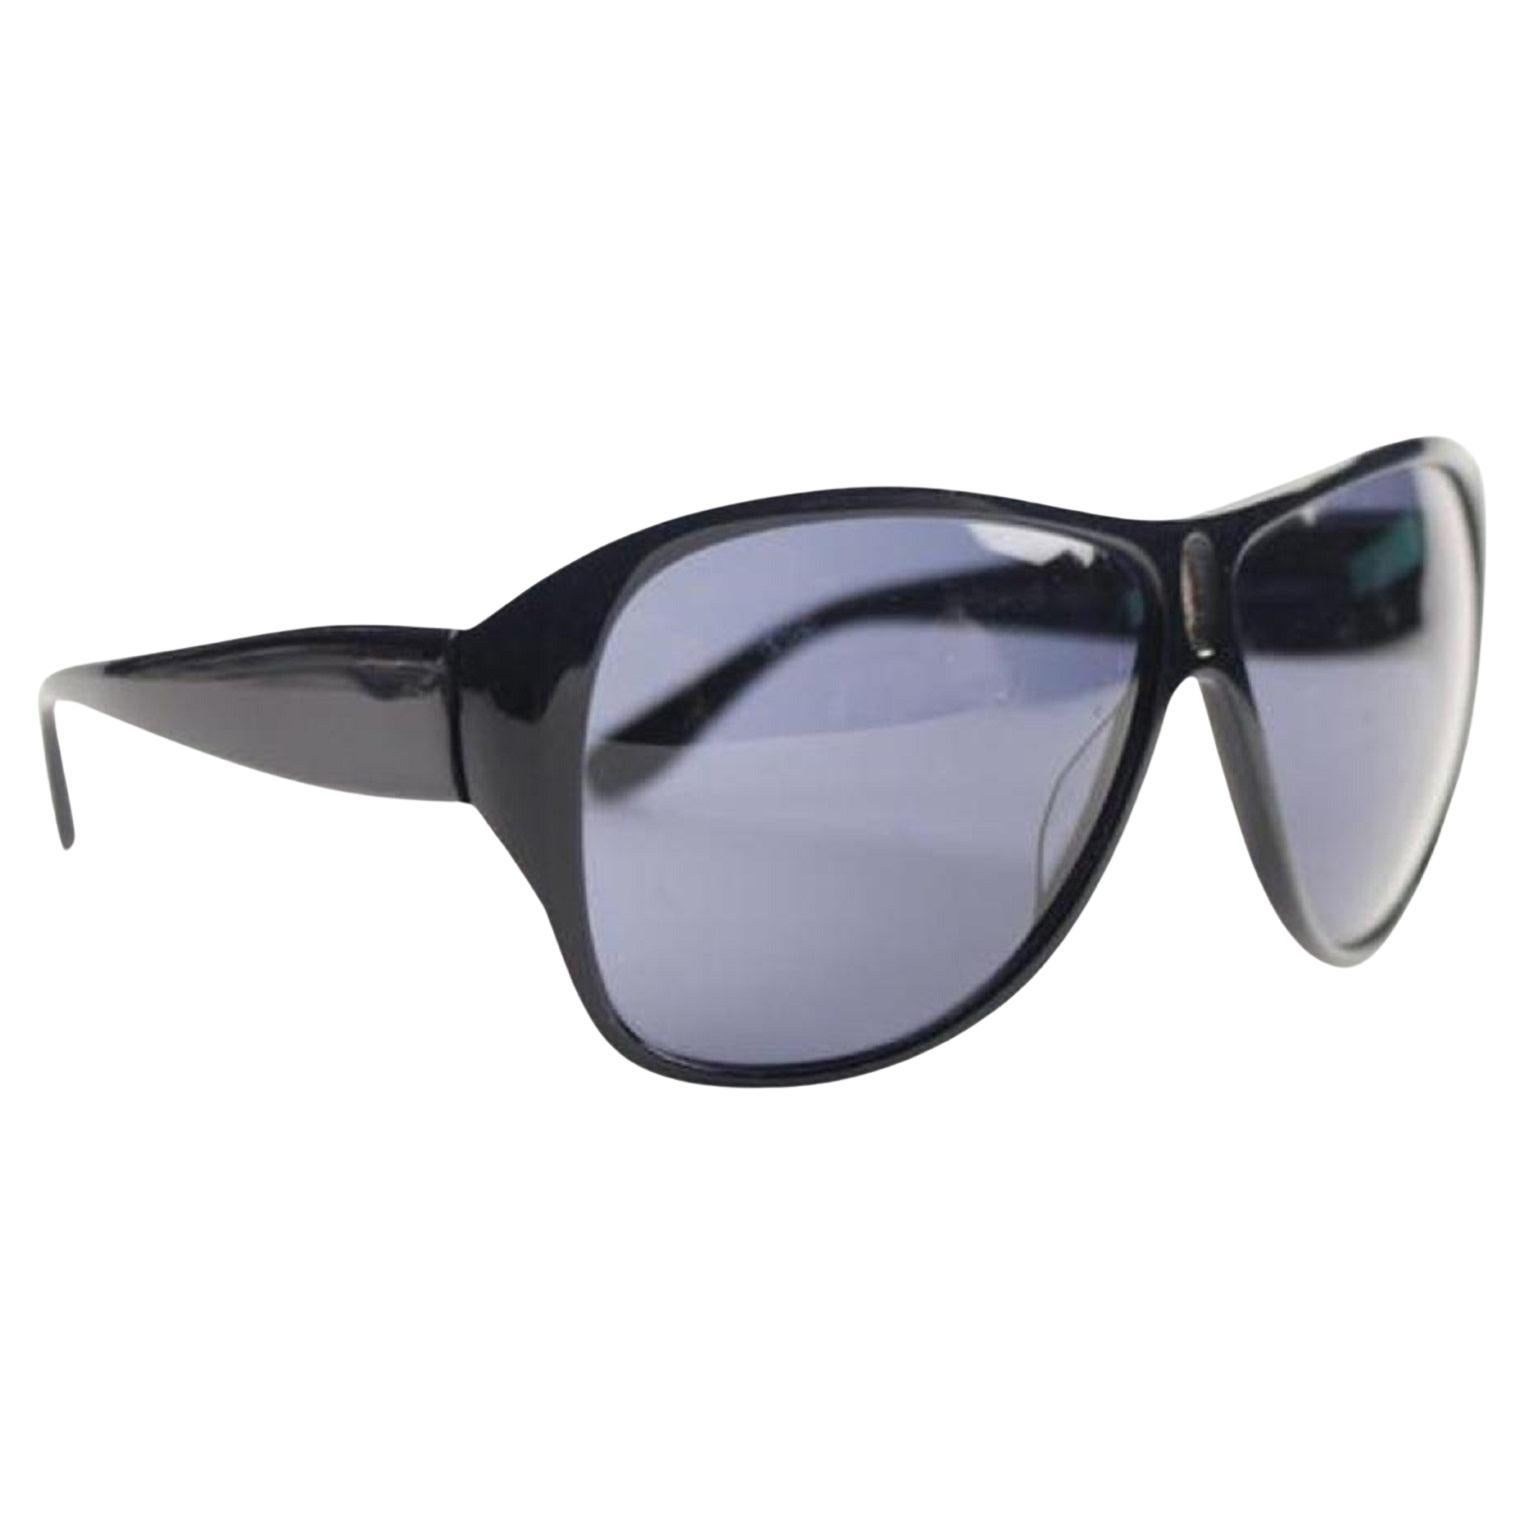 Derek Lam 60 9-128 61dla919 Sunglasses For Sale at 1stDibs